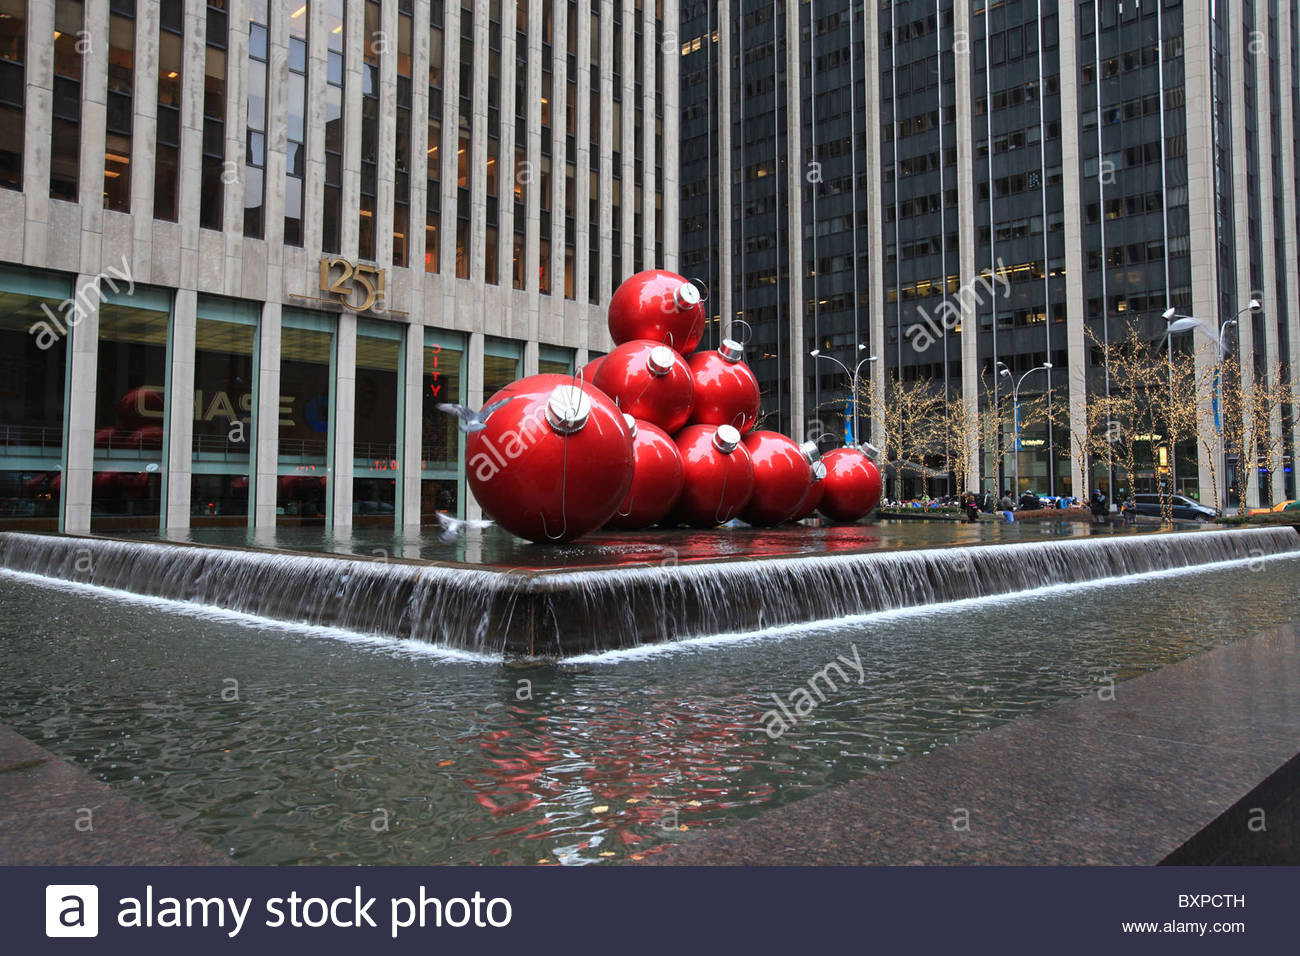 Pool City Christmas Trees
 Giant Christmas ornament balls outside Rockefeller center